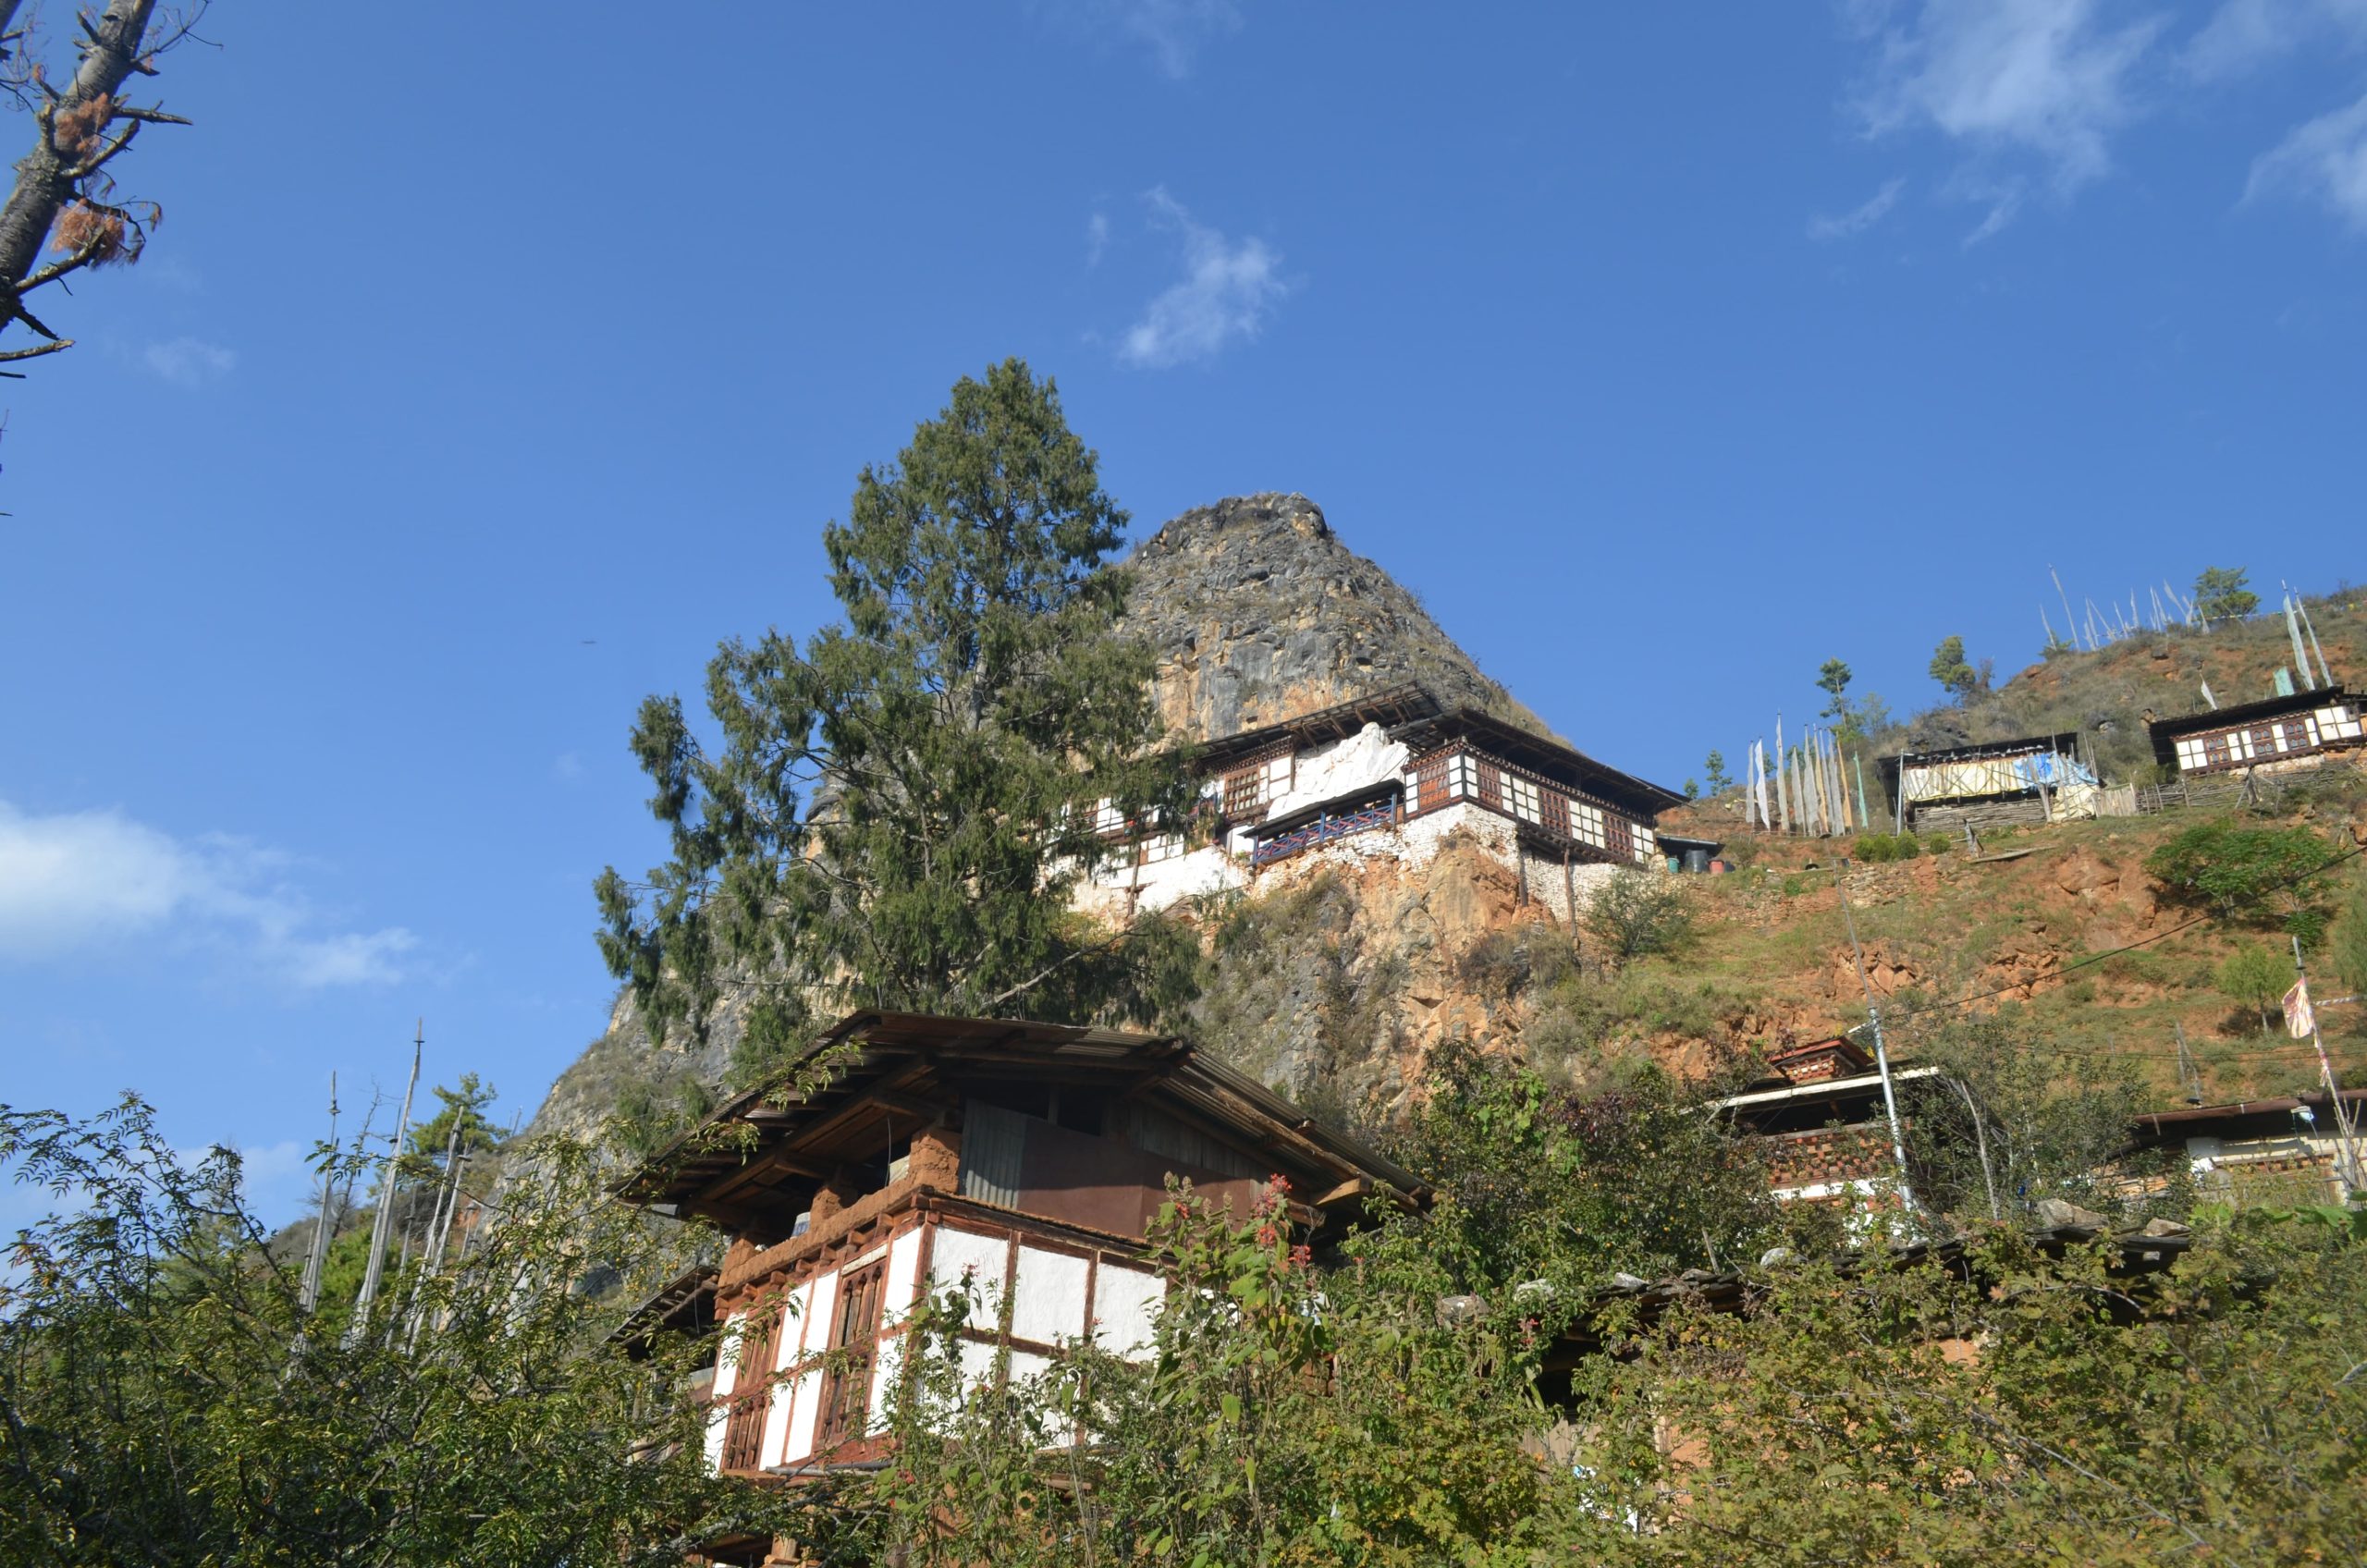 paro-in-bhutan